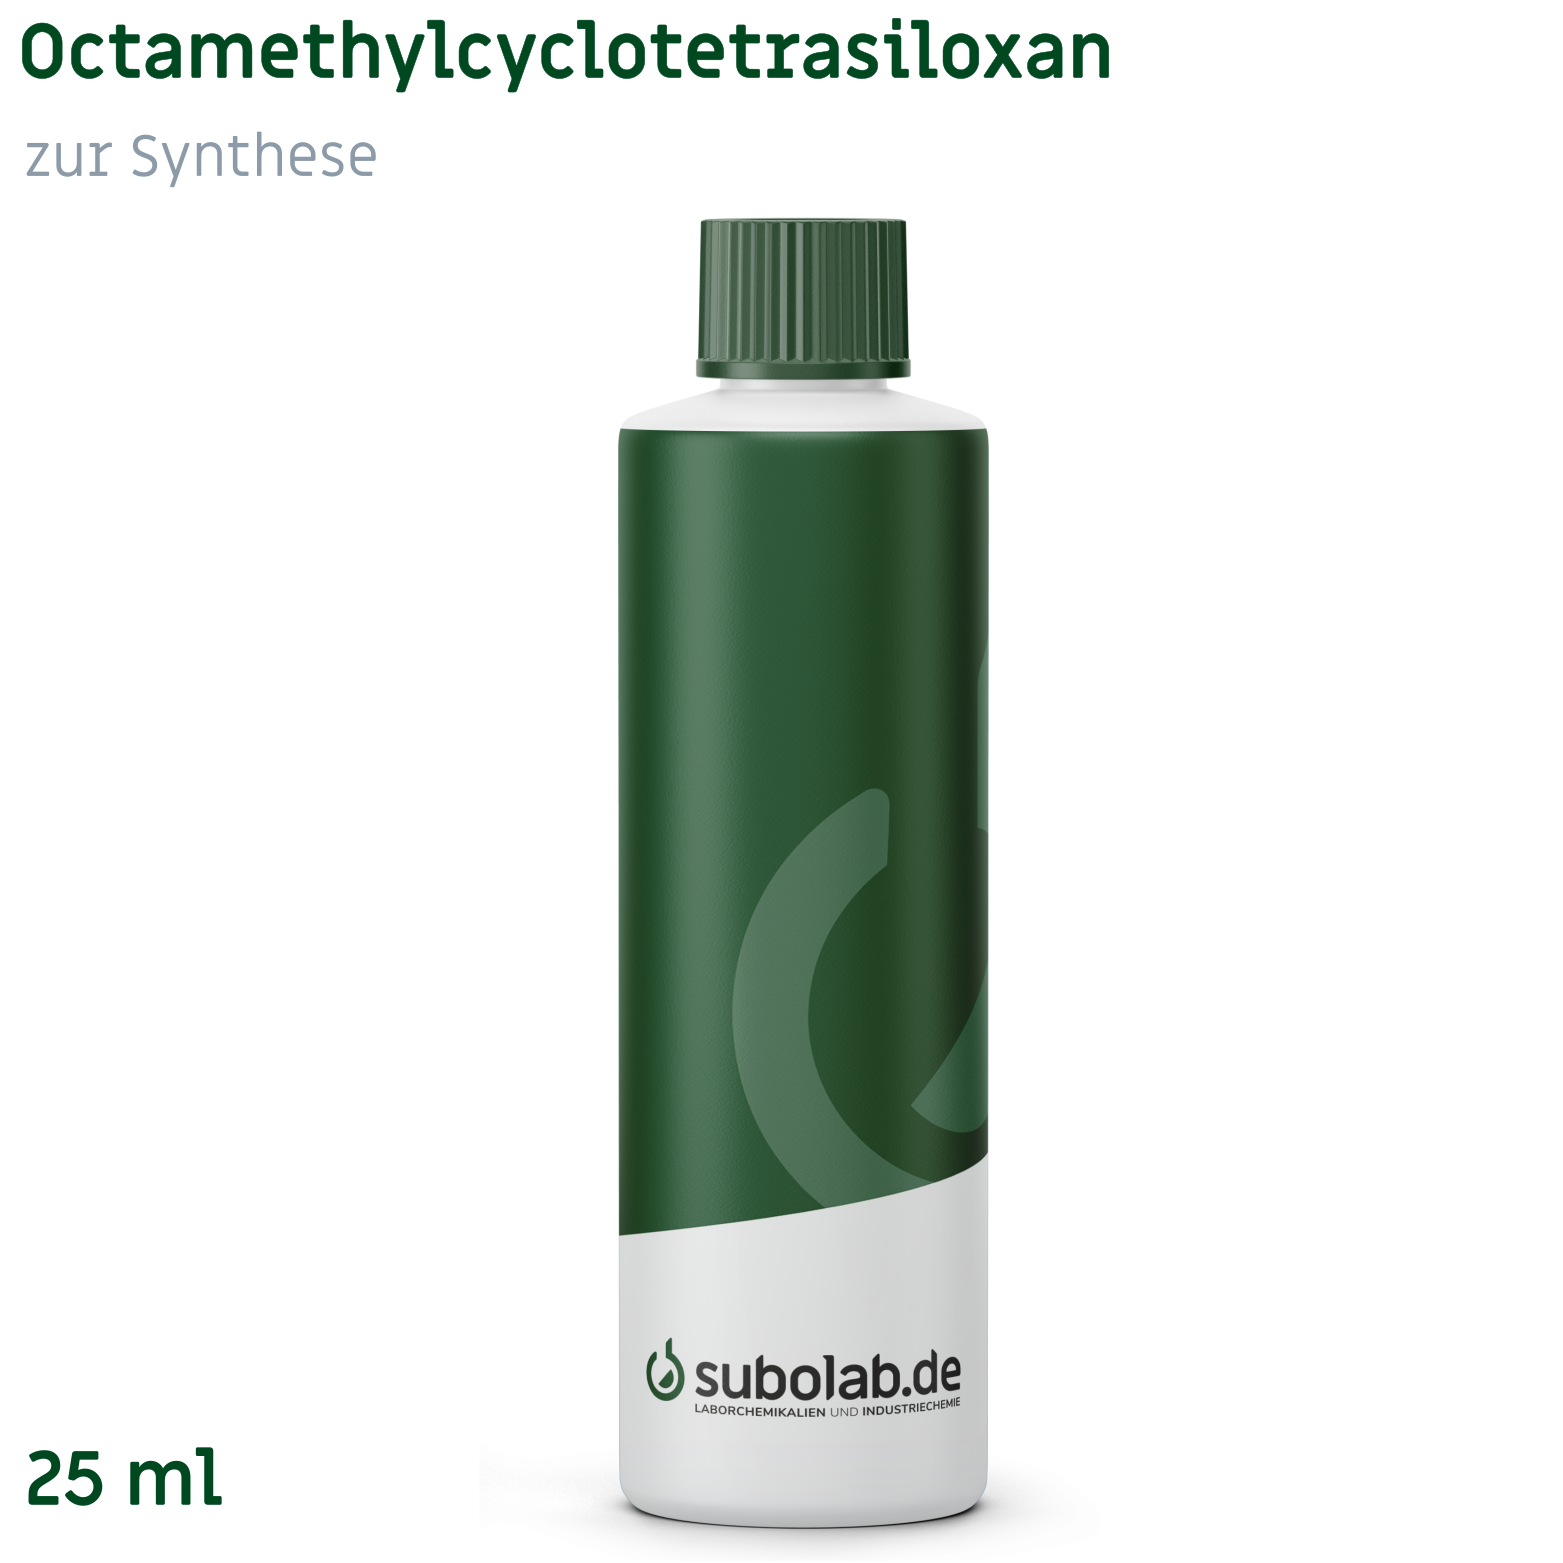 Bild von Octamethylcyclotetrasiloxan zur Synthese (25 ml)